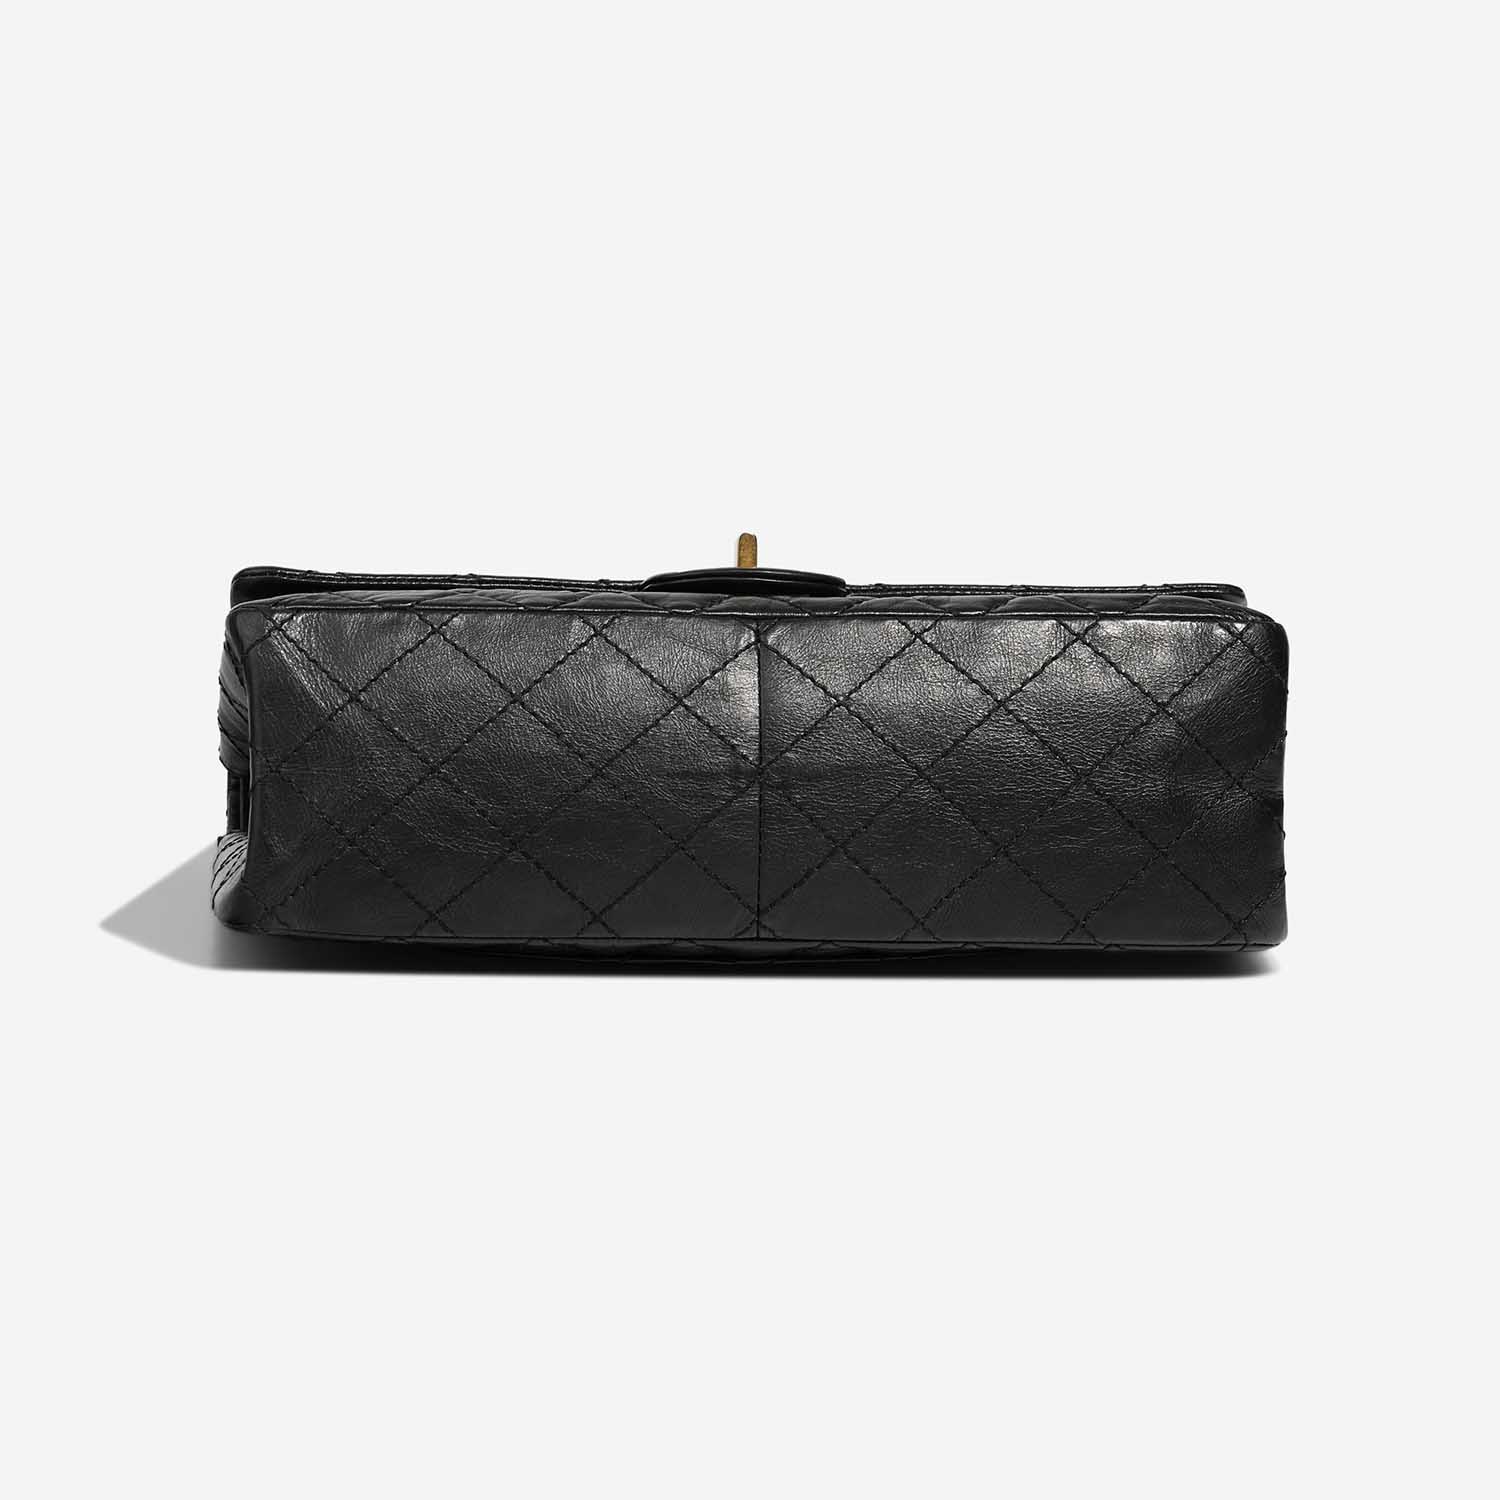 Chanel 255 226 Black Bottom | Verkaufen Sie Ihre Designer-Tasche auf Saclab.com